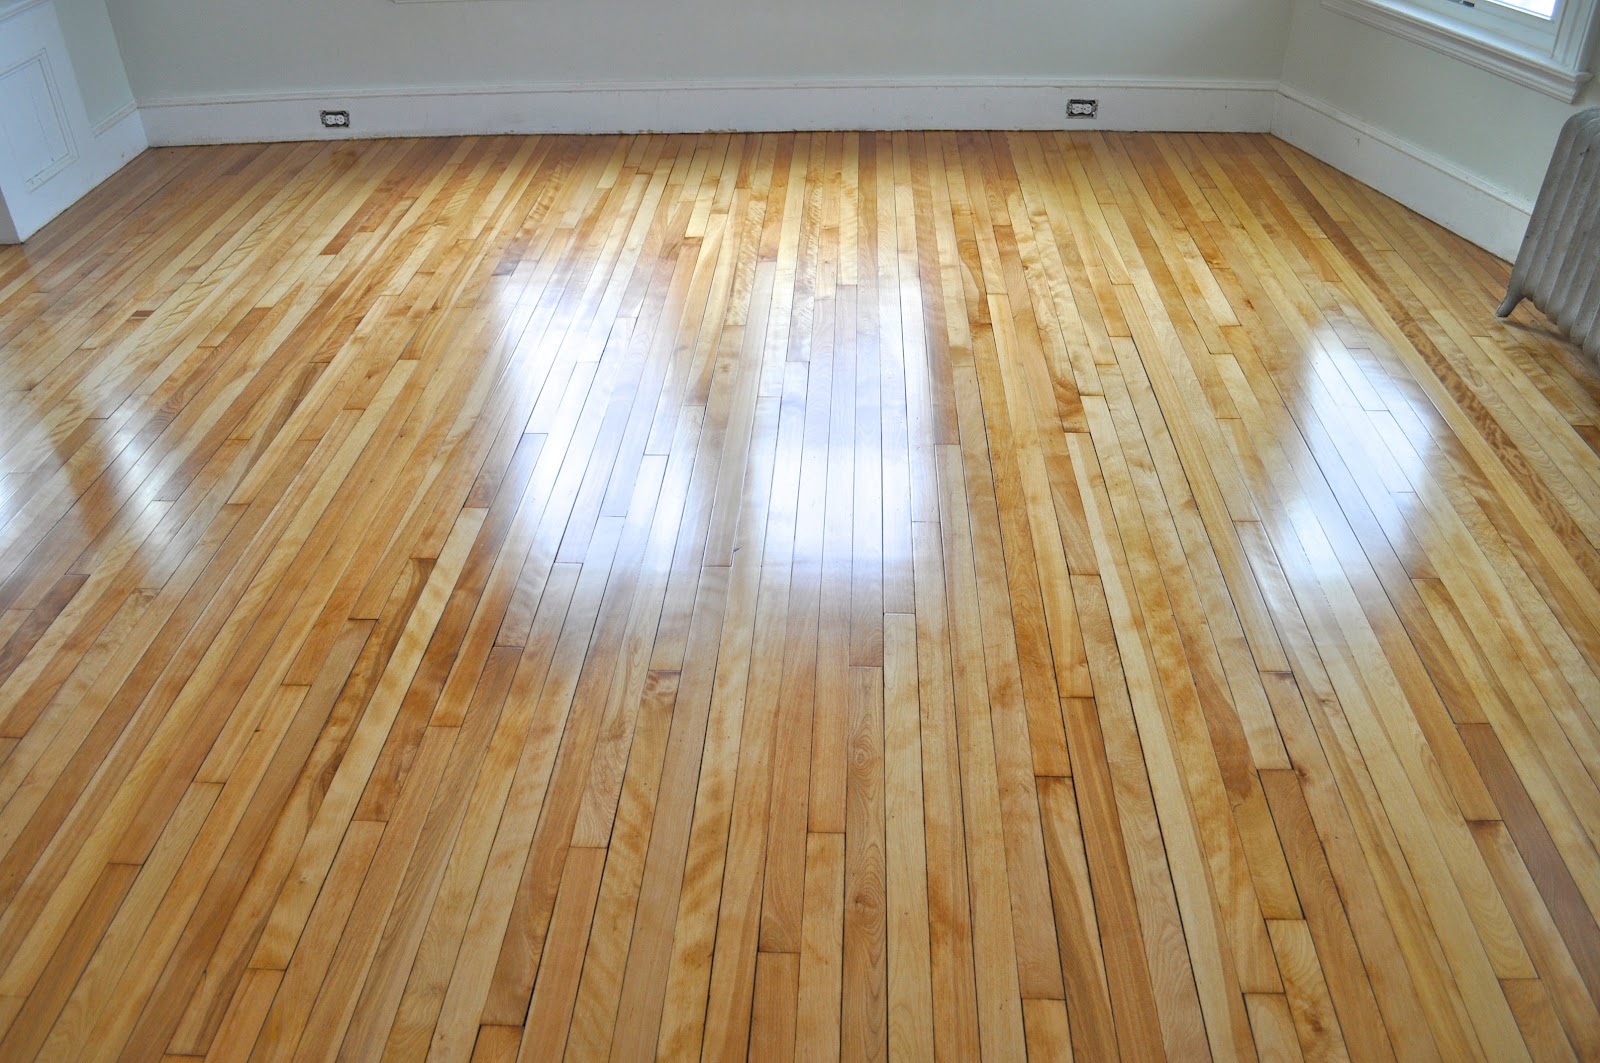 Shiny Floor Tiles For Living Room